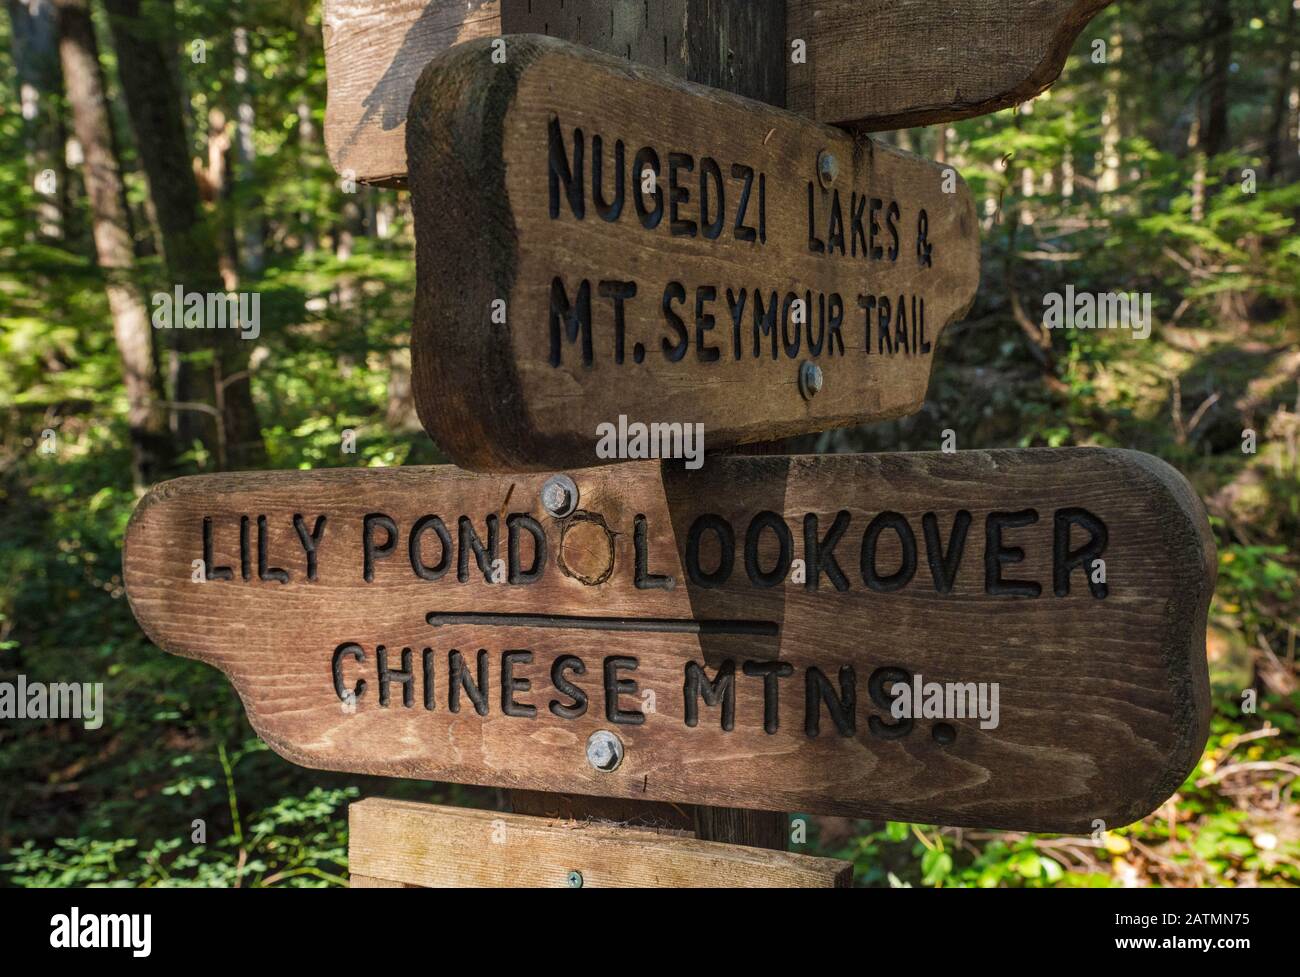 Indicazioni Per Nugedzi Lakes E Mt Seymour Trail, Quadra Island, British Columbia, Canada Foto Stock